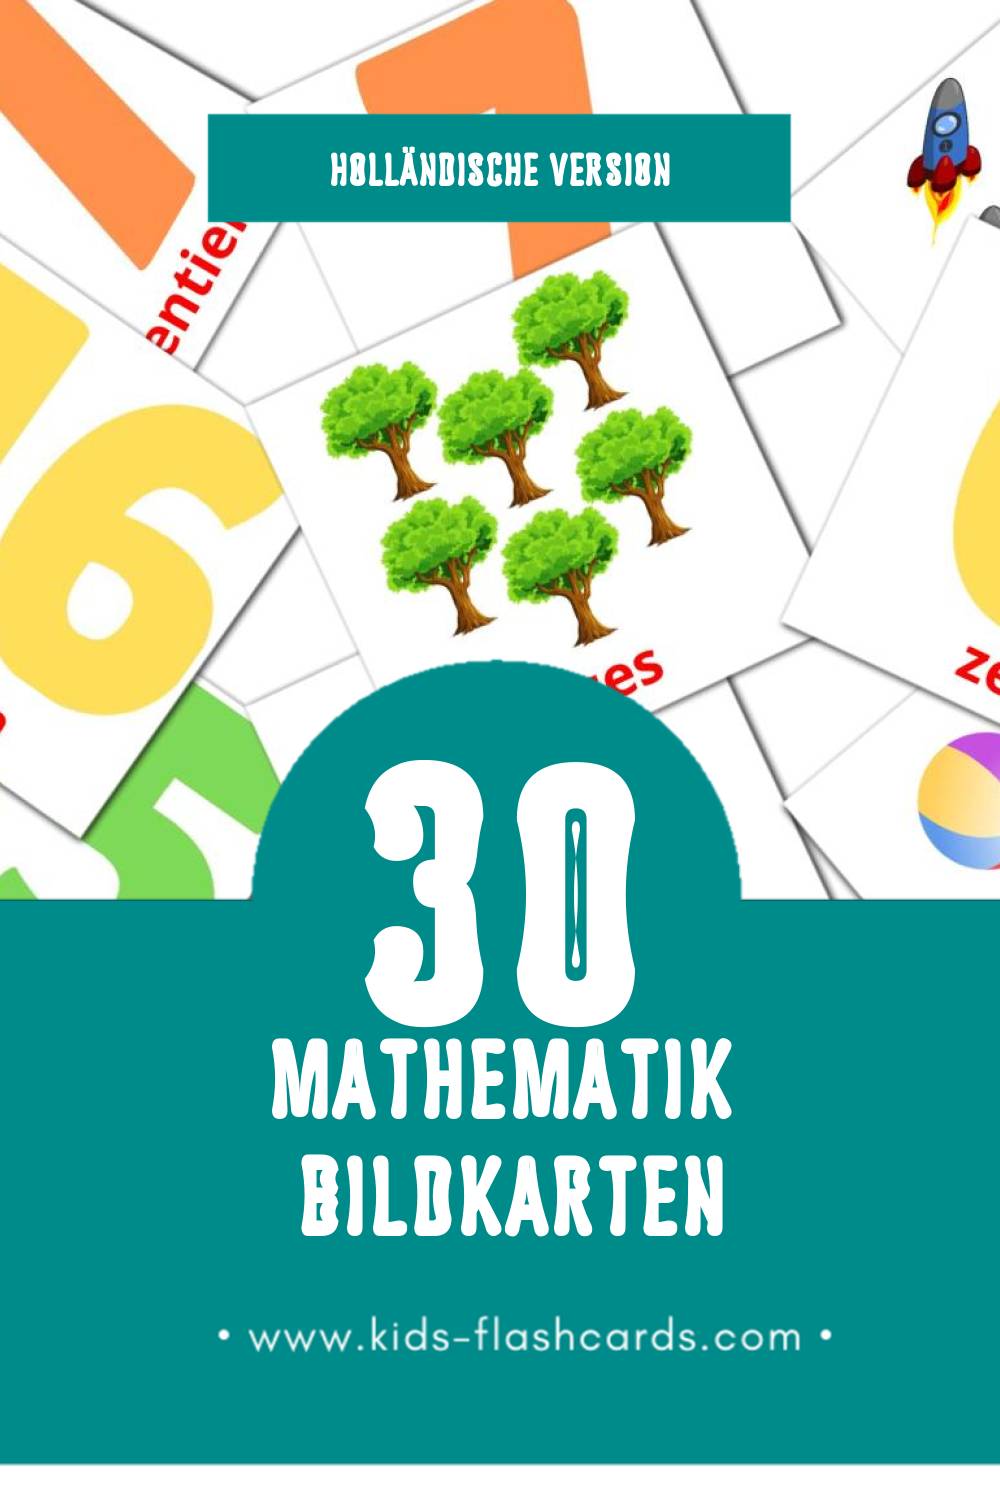 Visual Wiskunde Flashcards für Kleinkinder (30 Karten in Holländisch)